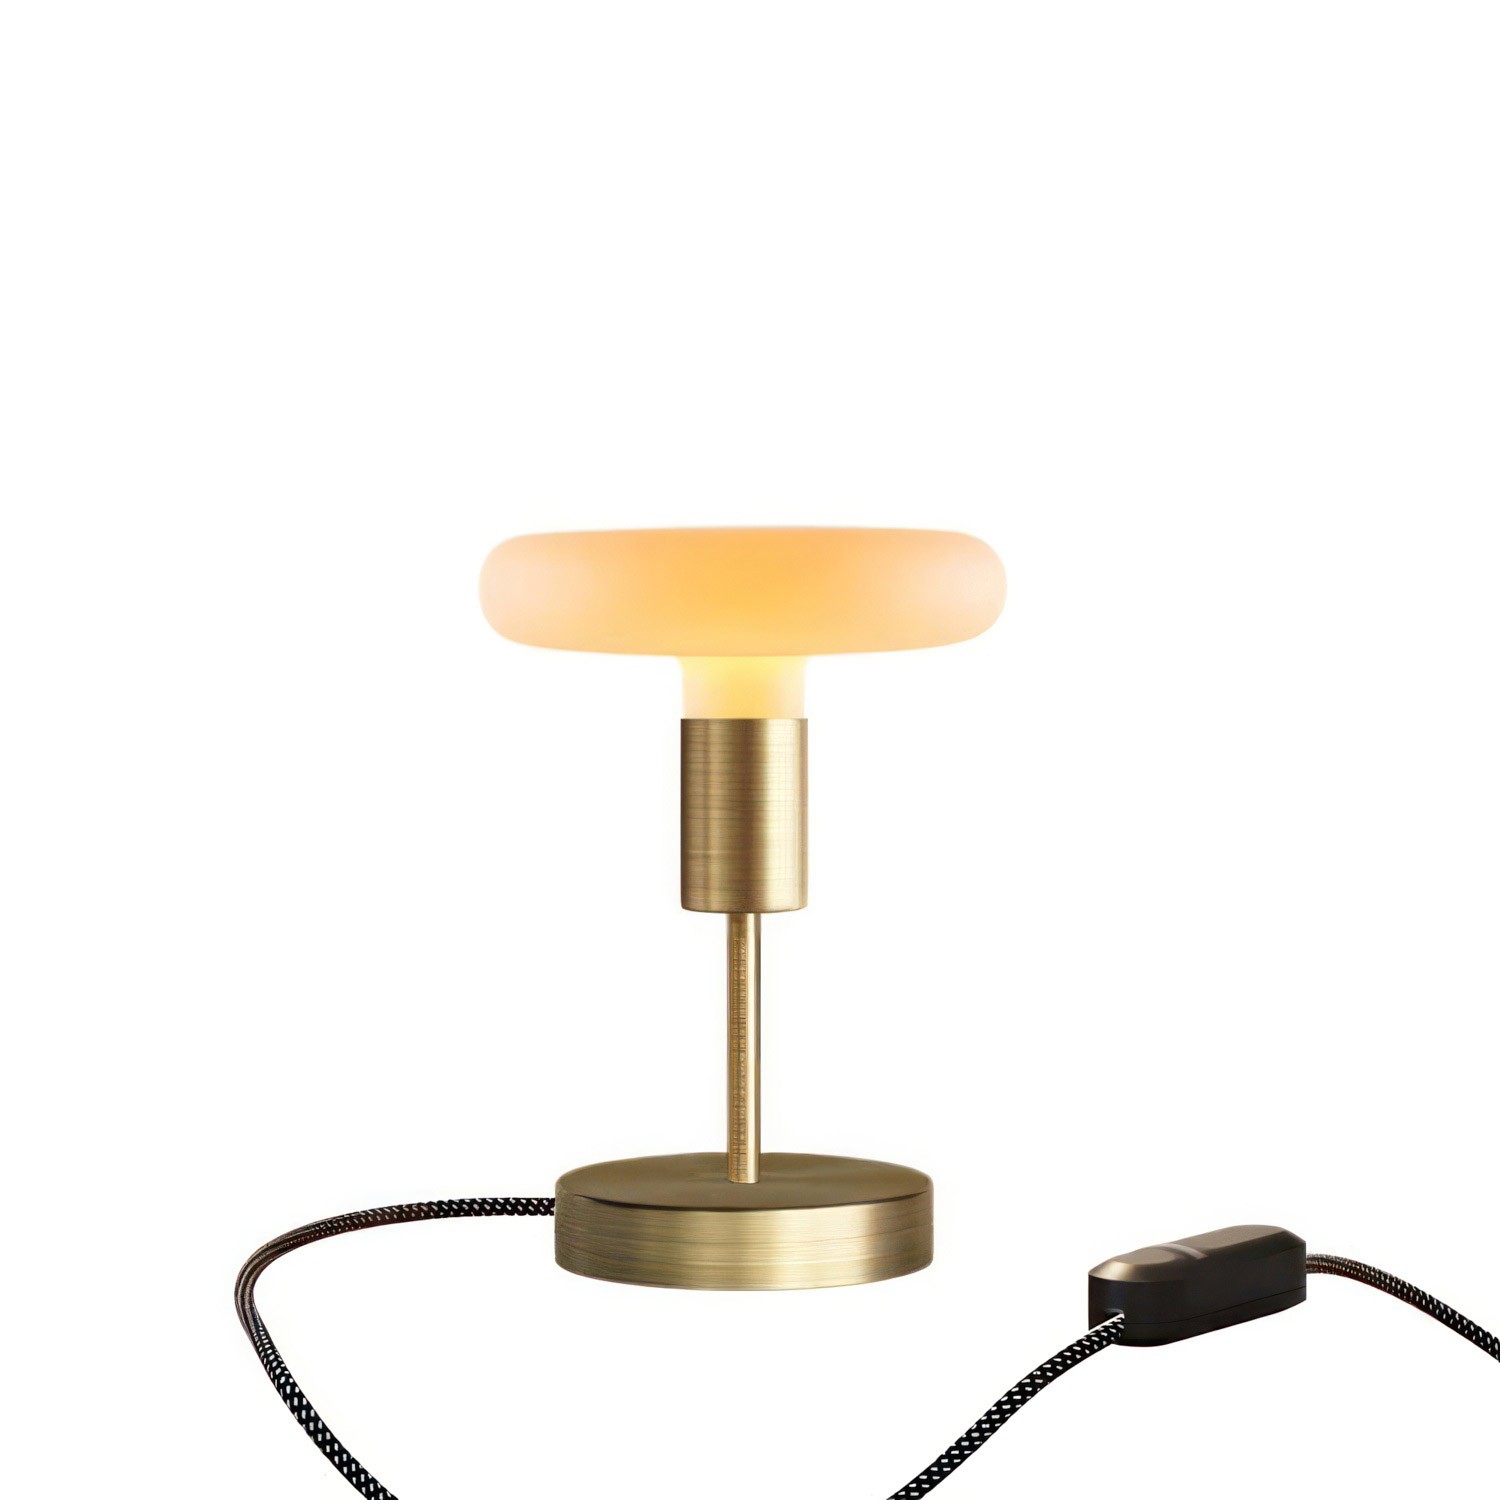 Lámpara de mesa metálica Alzaluce Dash con clavija de 2 polos